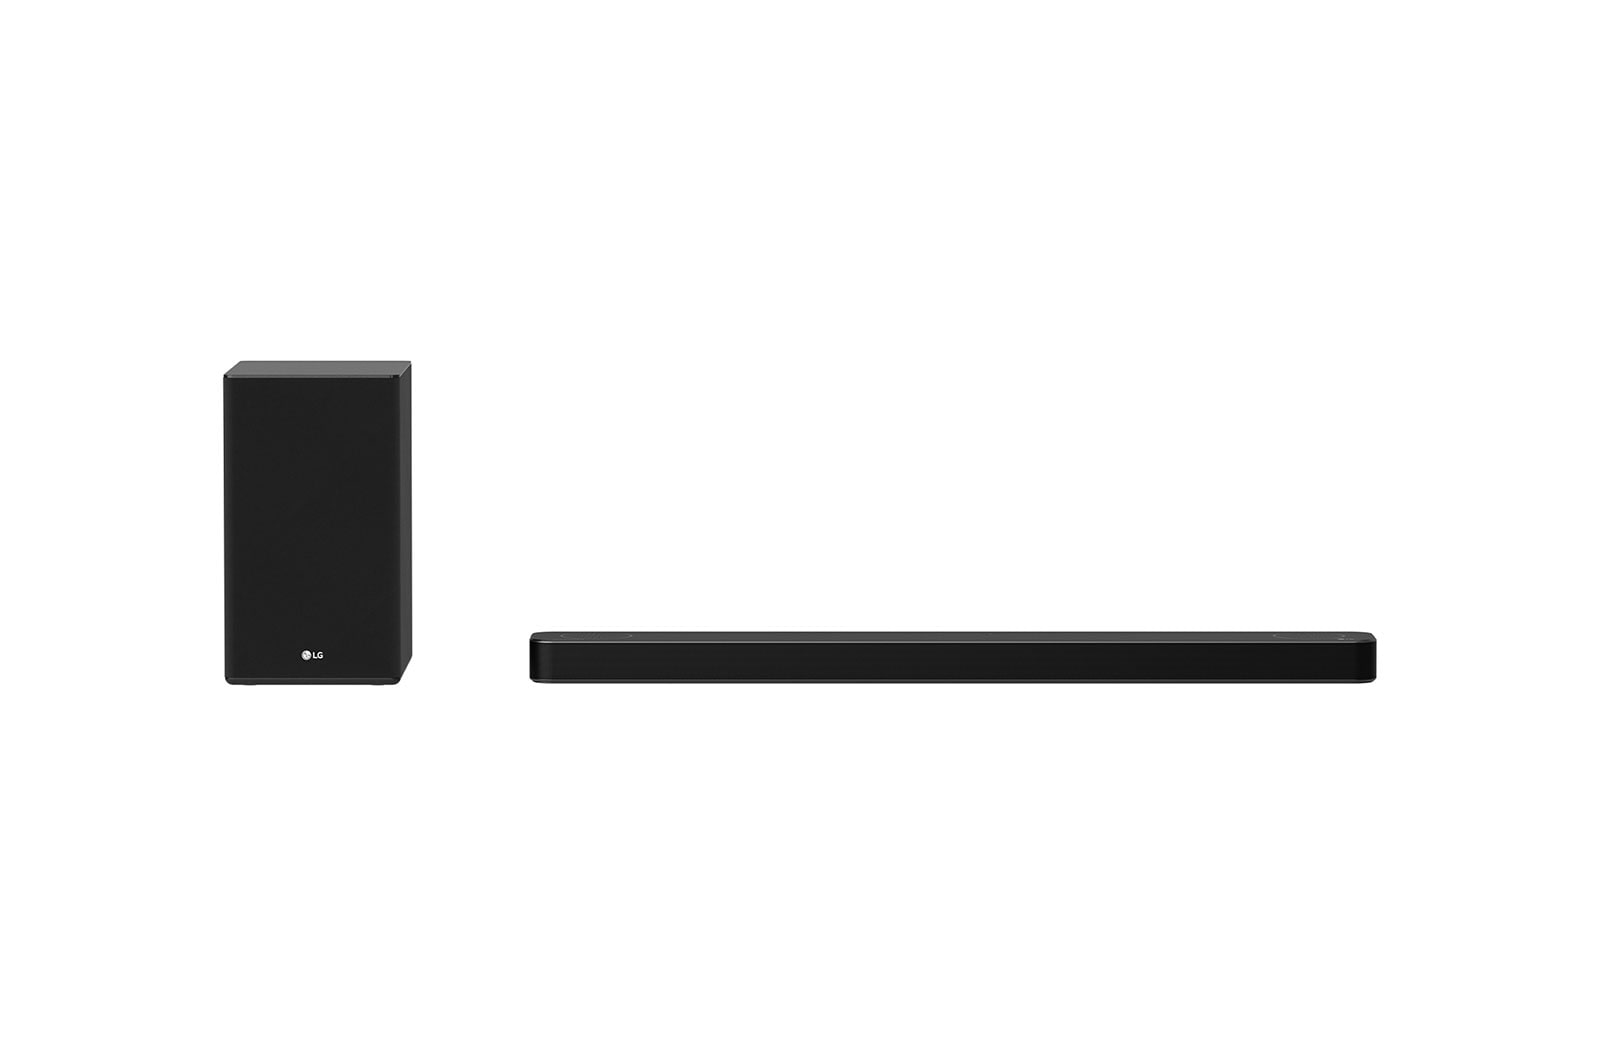 LG SP8A, 440W, 3.1.2ch with Meridian & Dolby Atmos® Soundbar - SP8A